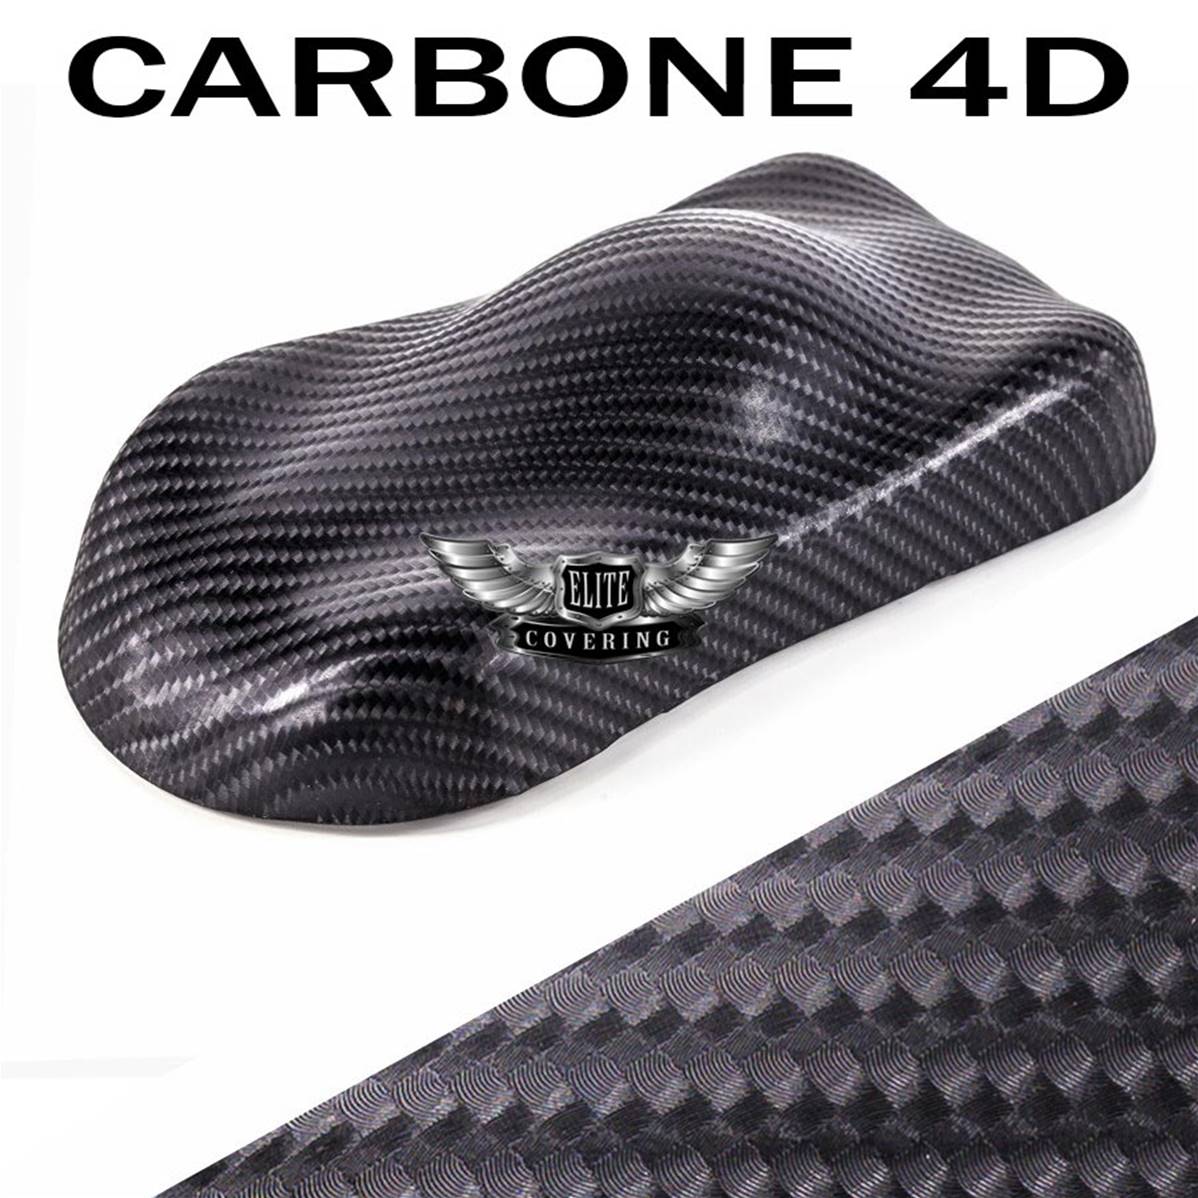 Film carbone 3D covering auto adhésif thermoformable 150 x 30 cm 24,90 €  Intérieur 123GOPIECES Livraison Offerte pour 2 produits achetés !